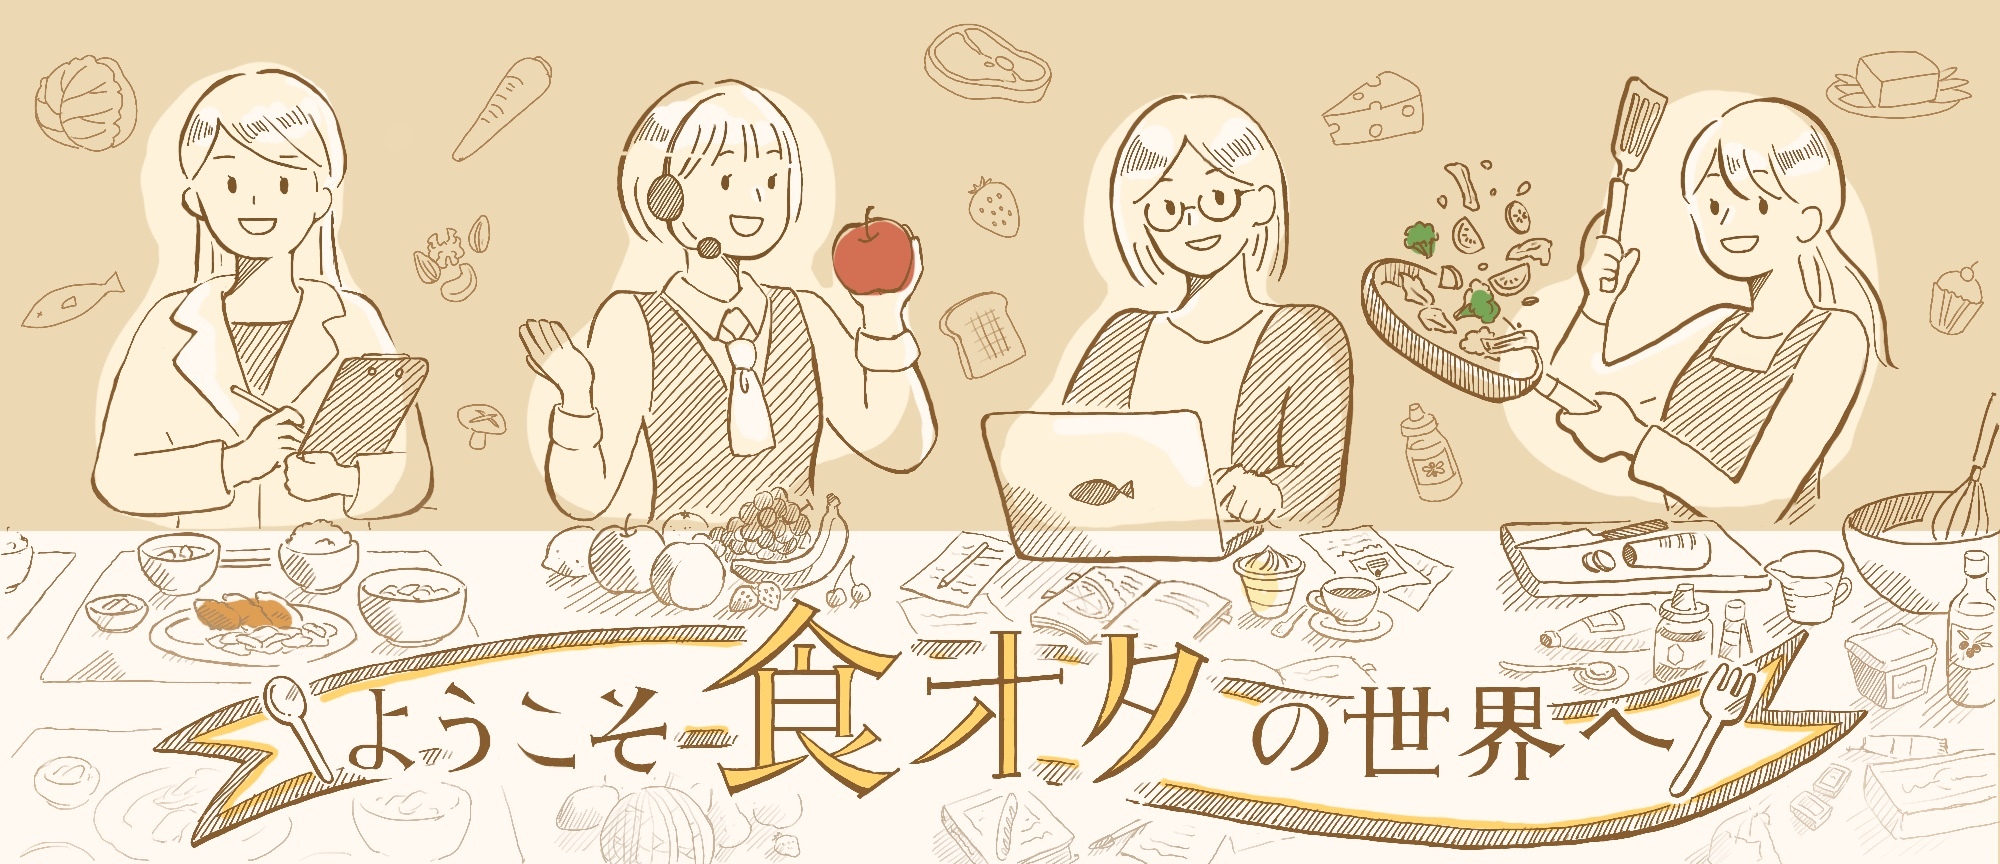 栄養士や野菜ソムリエなど主婦の活躍場所をサポートする
コミュニティサイト『食オタ』を3月21日にリリース